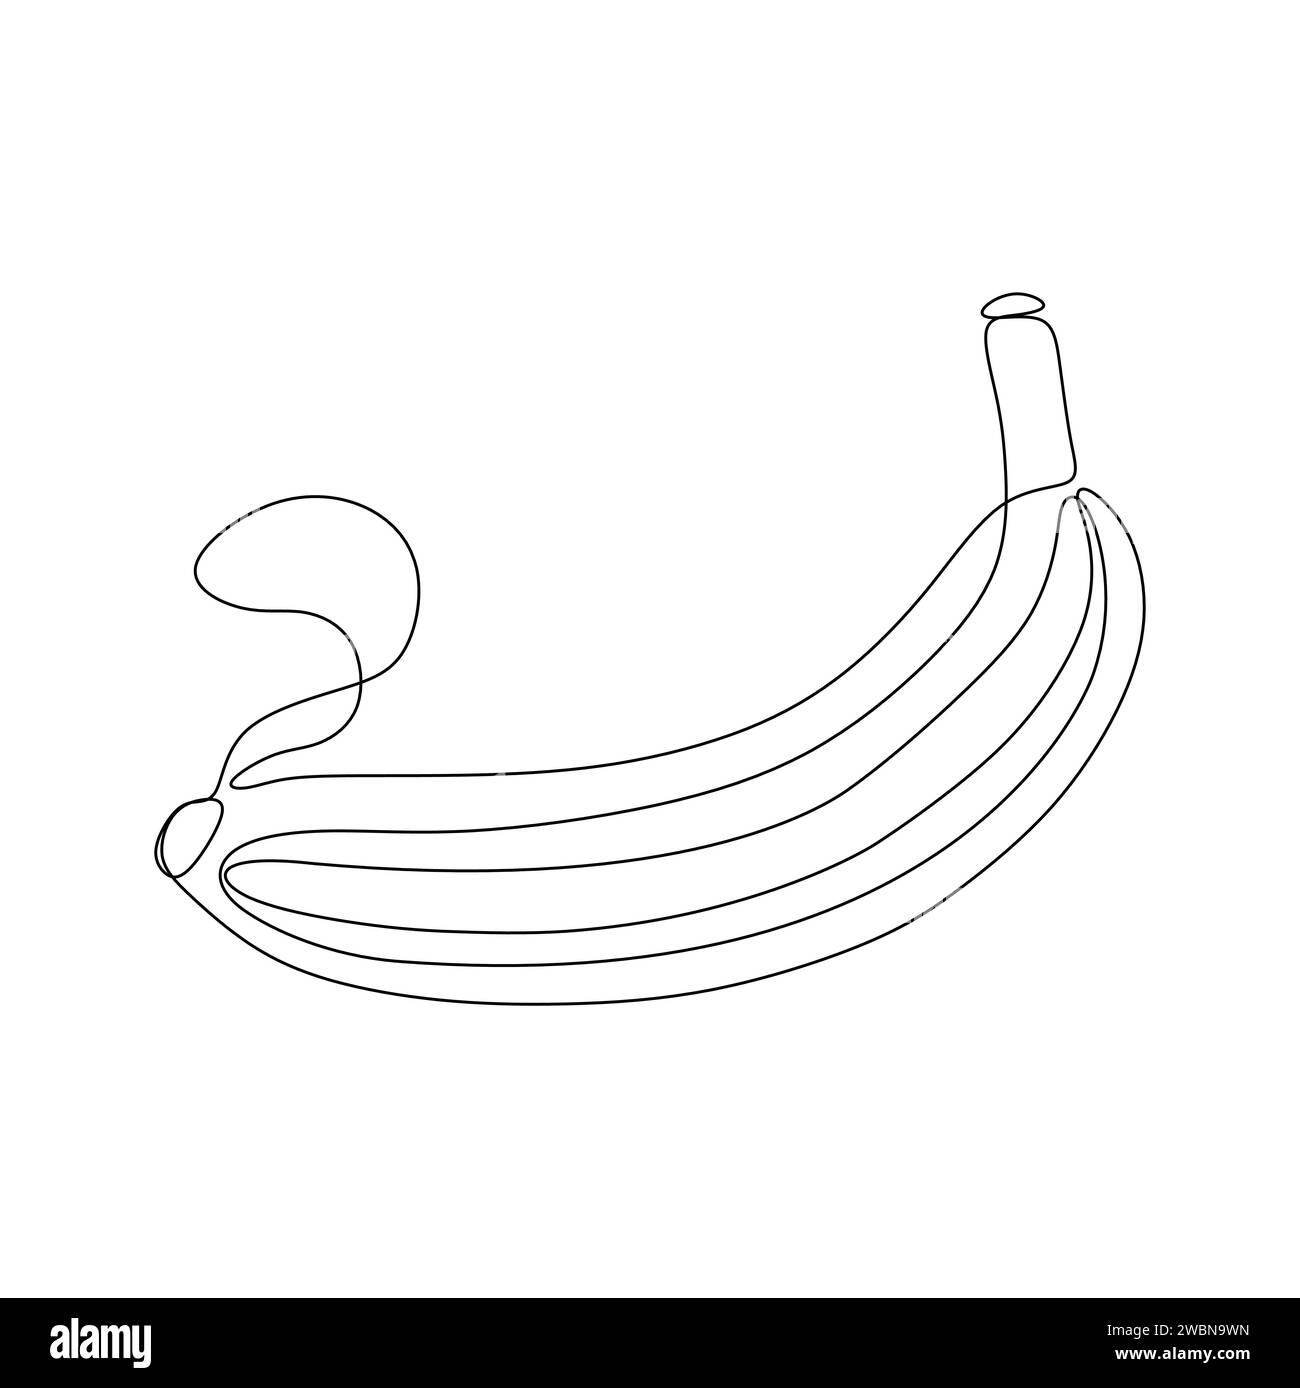 Dessin continu d'une ligne de banane. Illustration vectorielle isolée sur fond blanc. Illustration de Vecteur